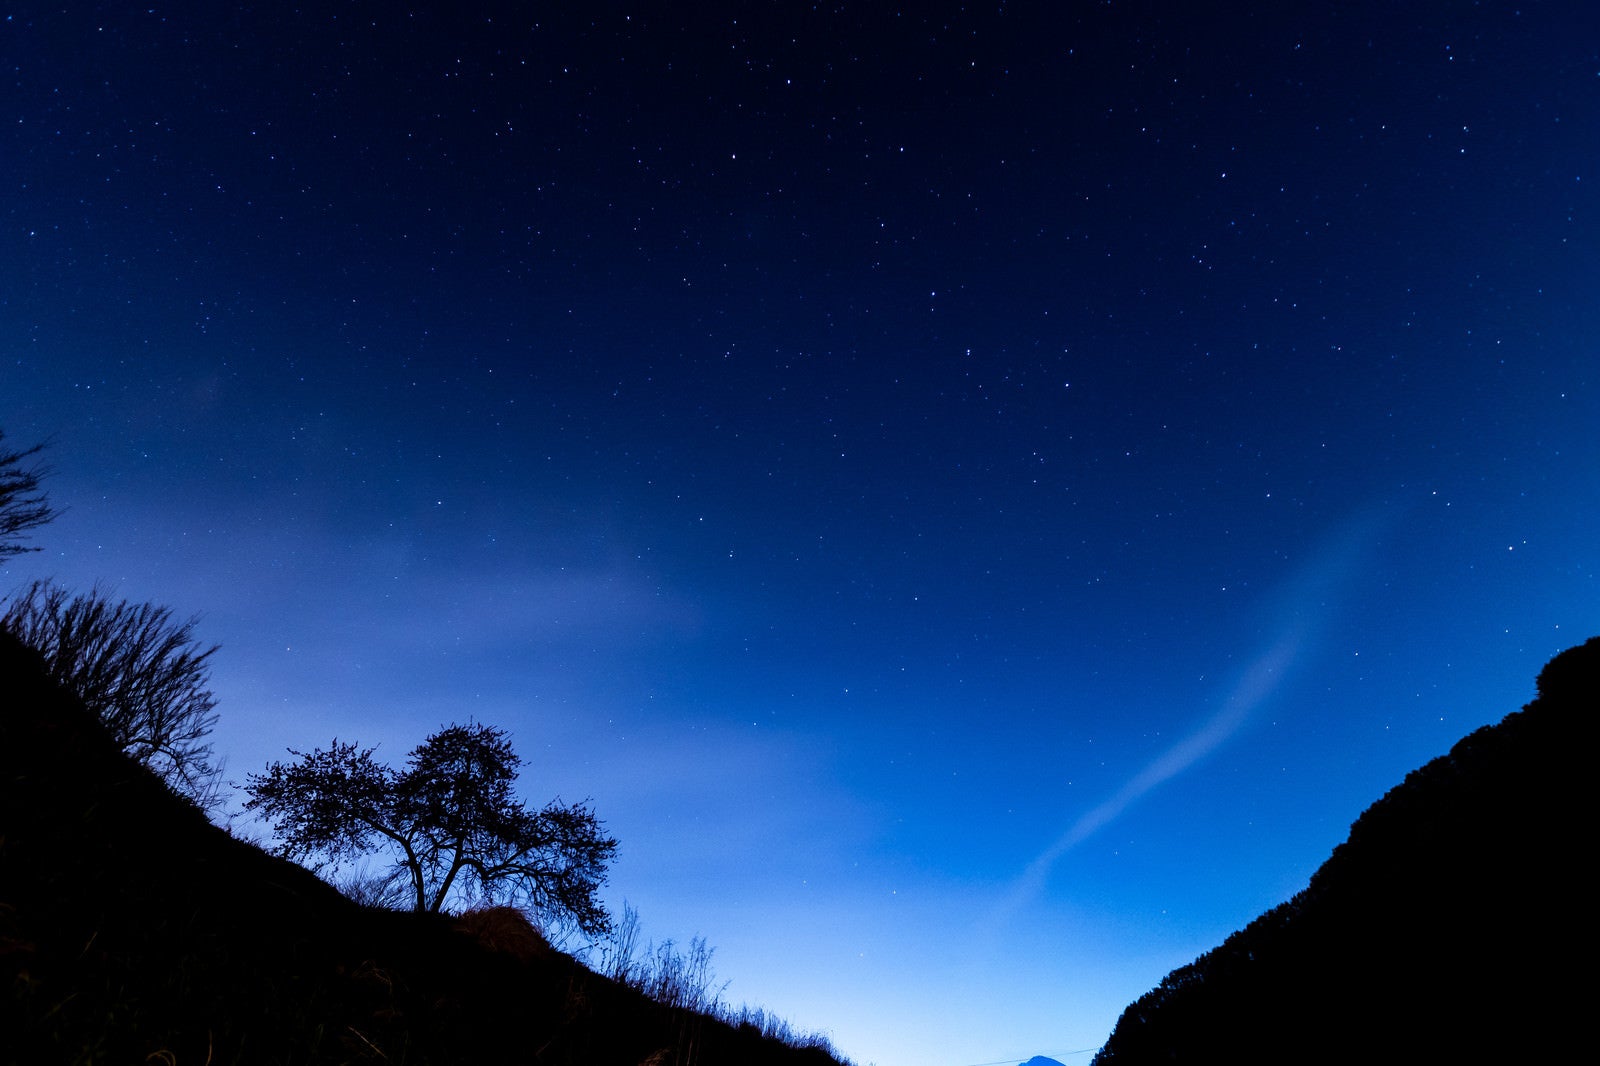 「余里の夜空と木々のシルエット」の写真